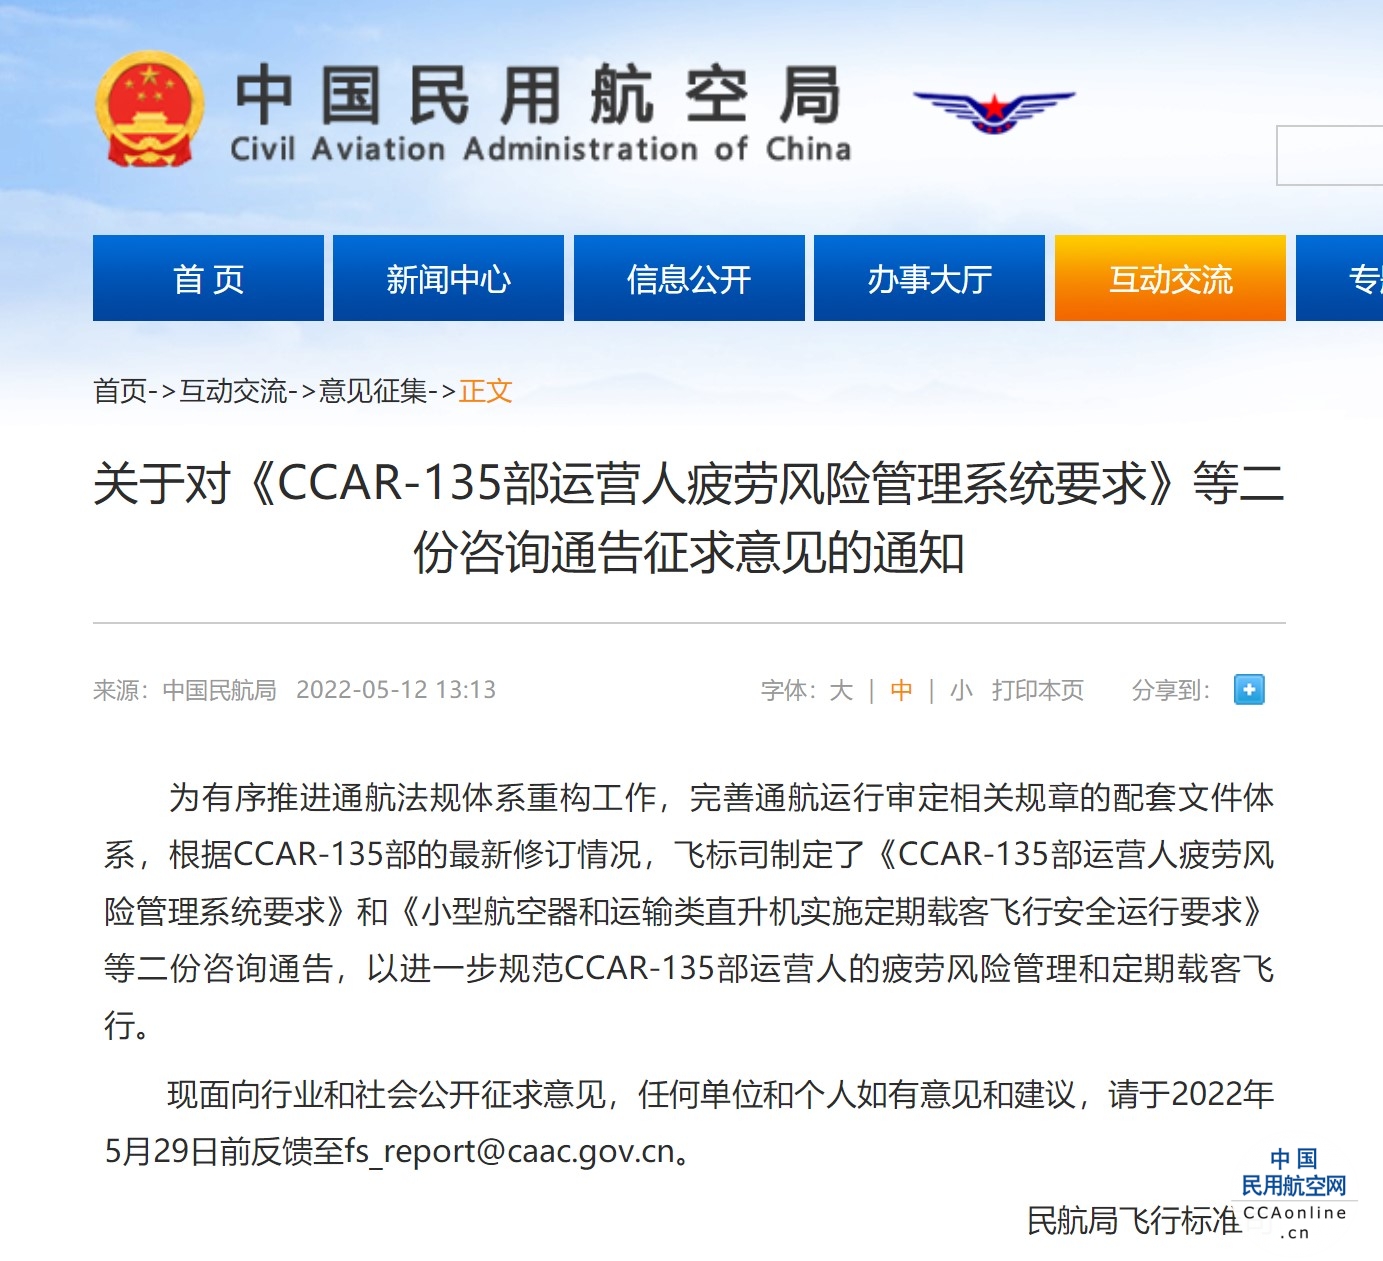 民航局飞行标准司发布关于对《CCAR-135部运营人疲劳风险管理系统要求》等二份咨询通告征求意见的通知